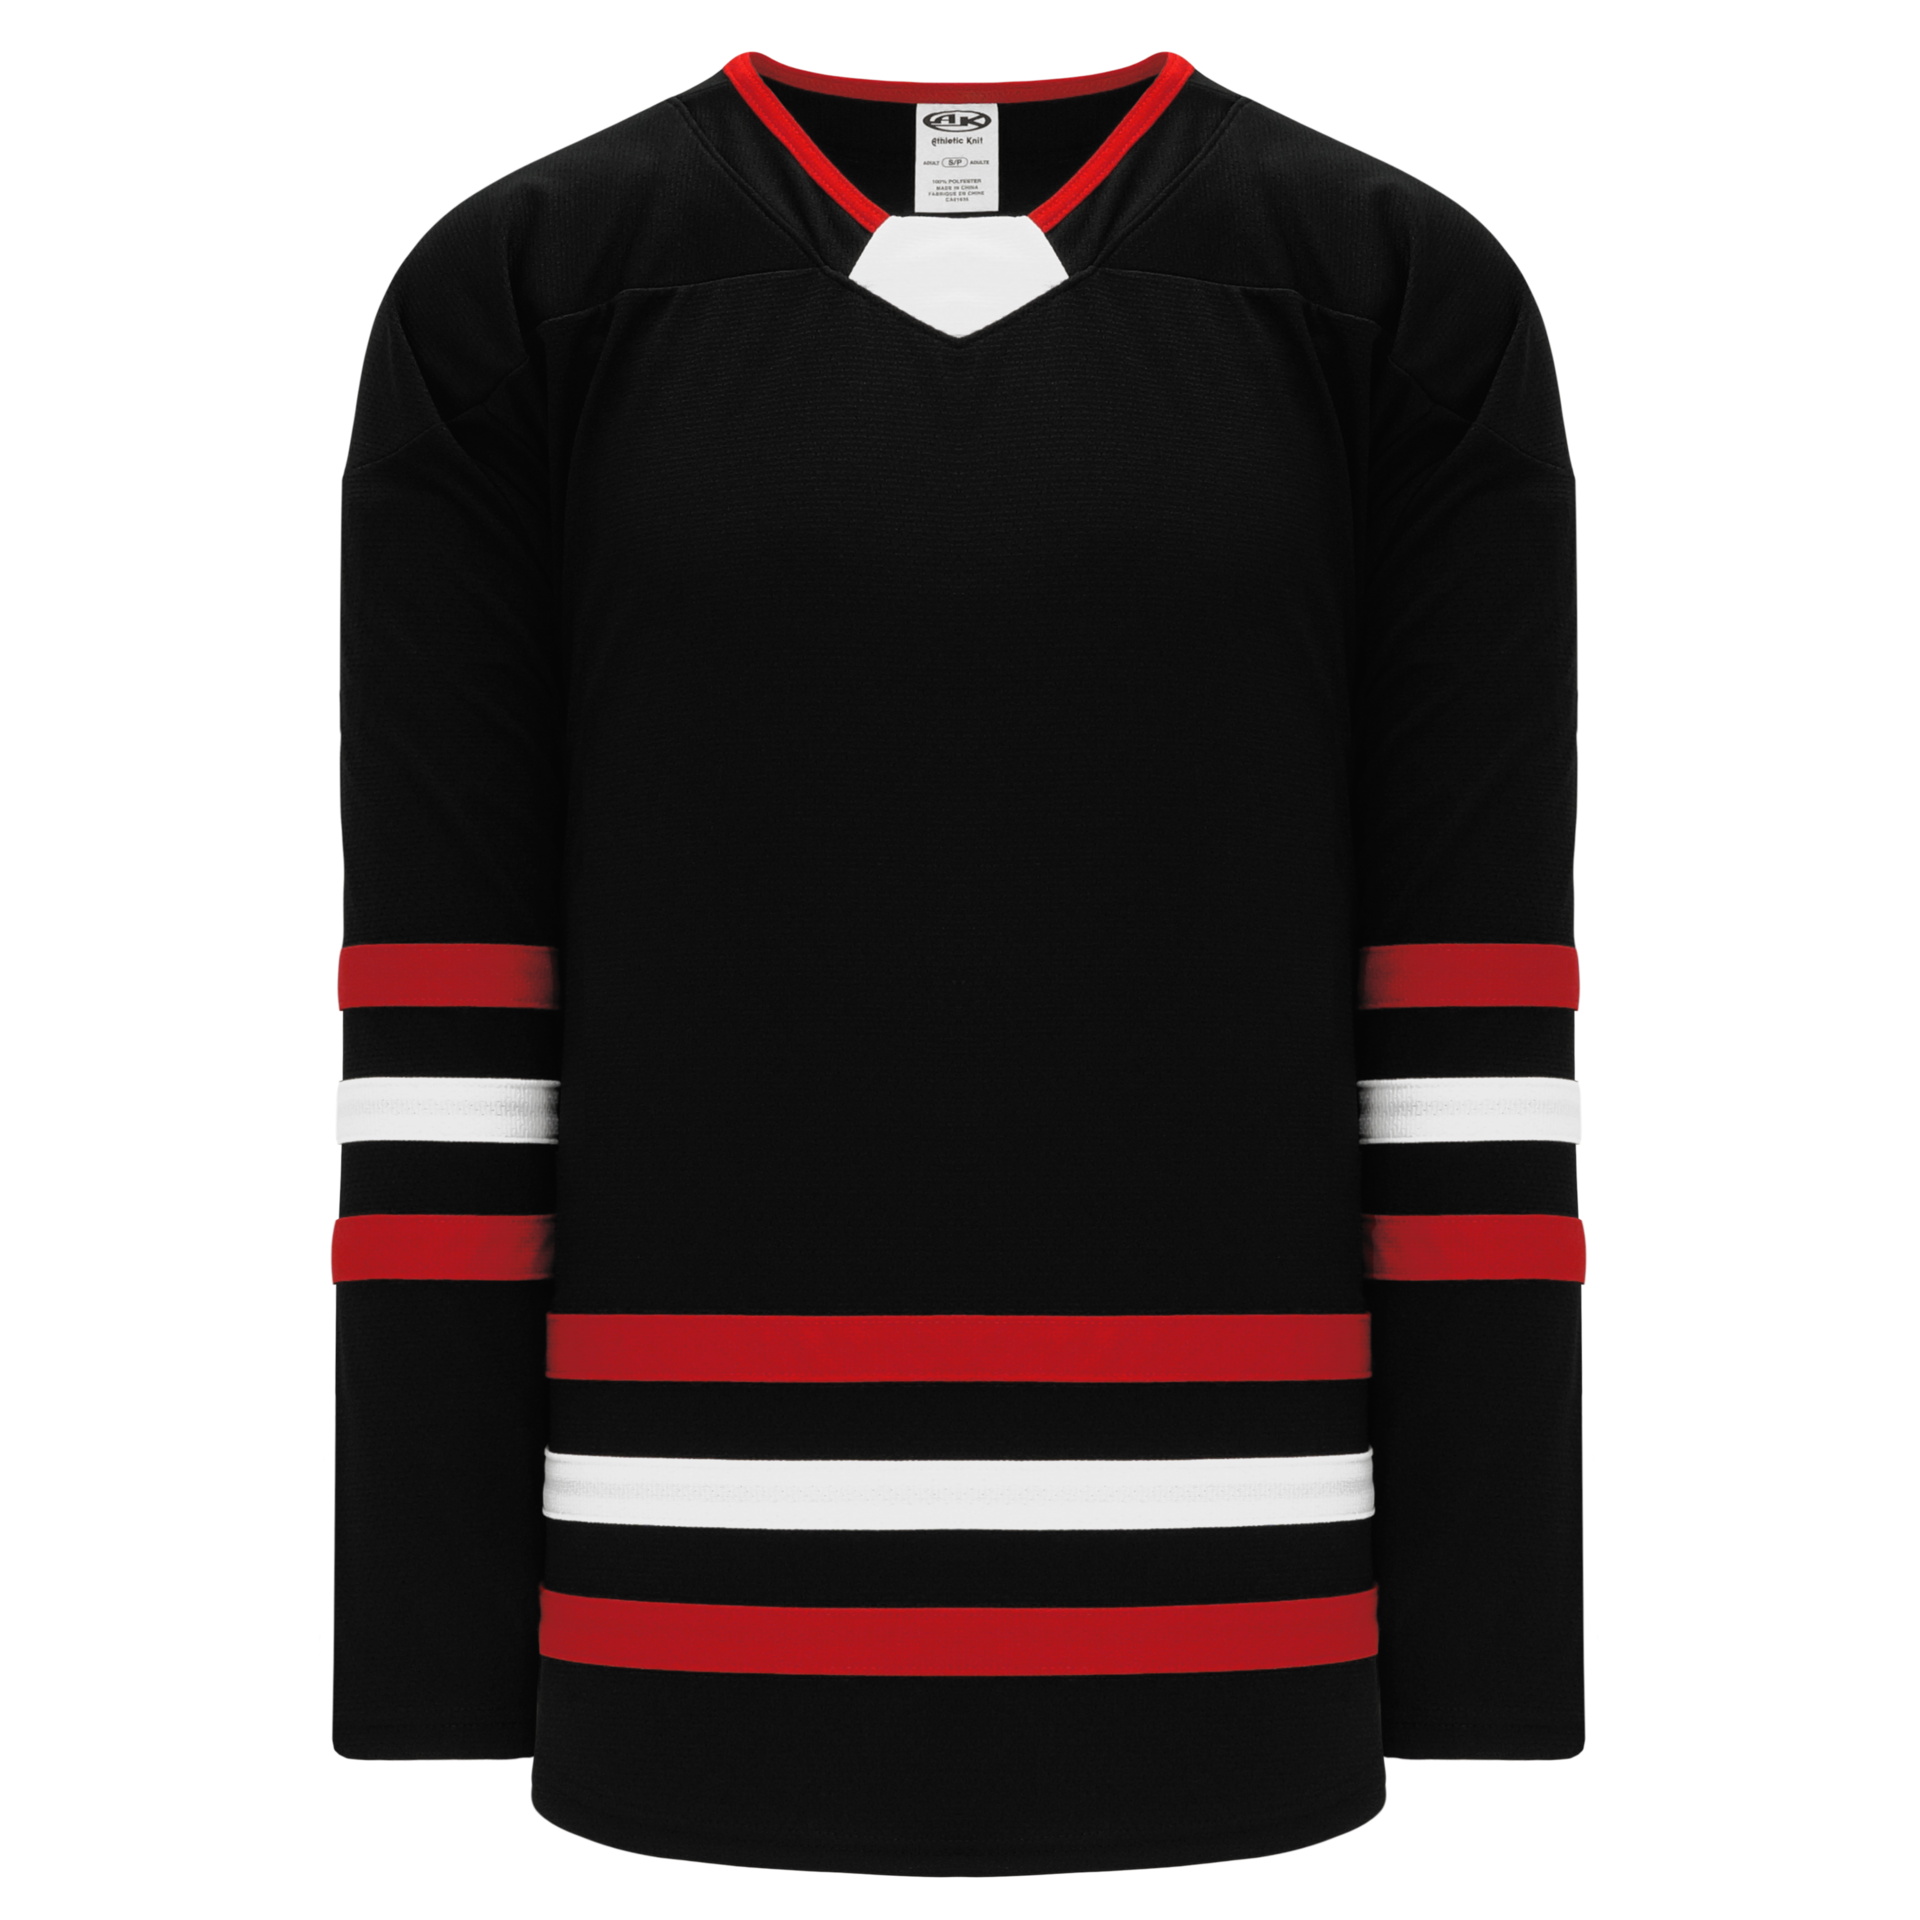 NHL Boston Bruins Womens Adidas Iced Lines V Neck T Shirt